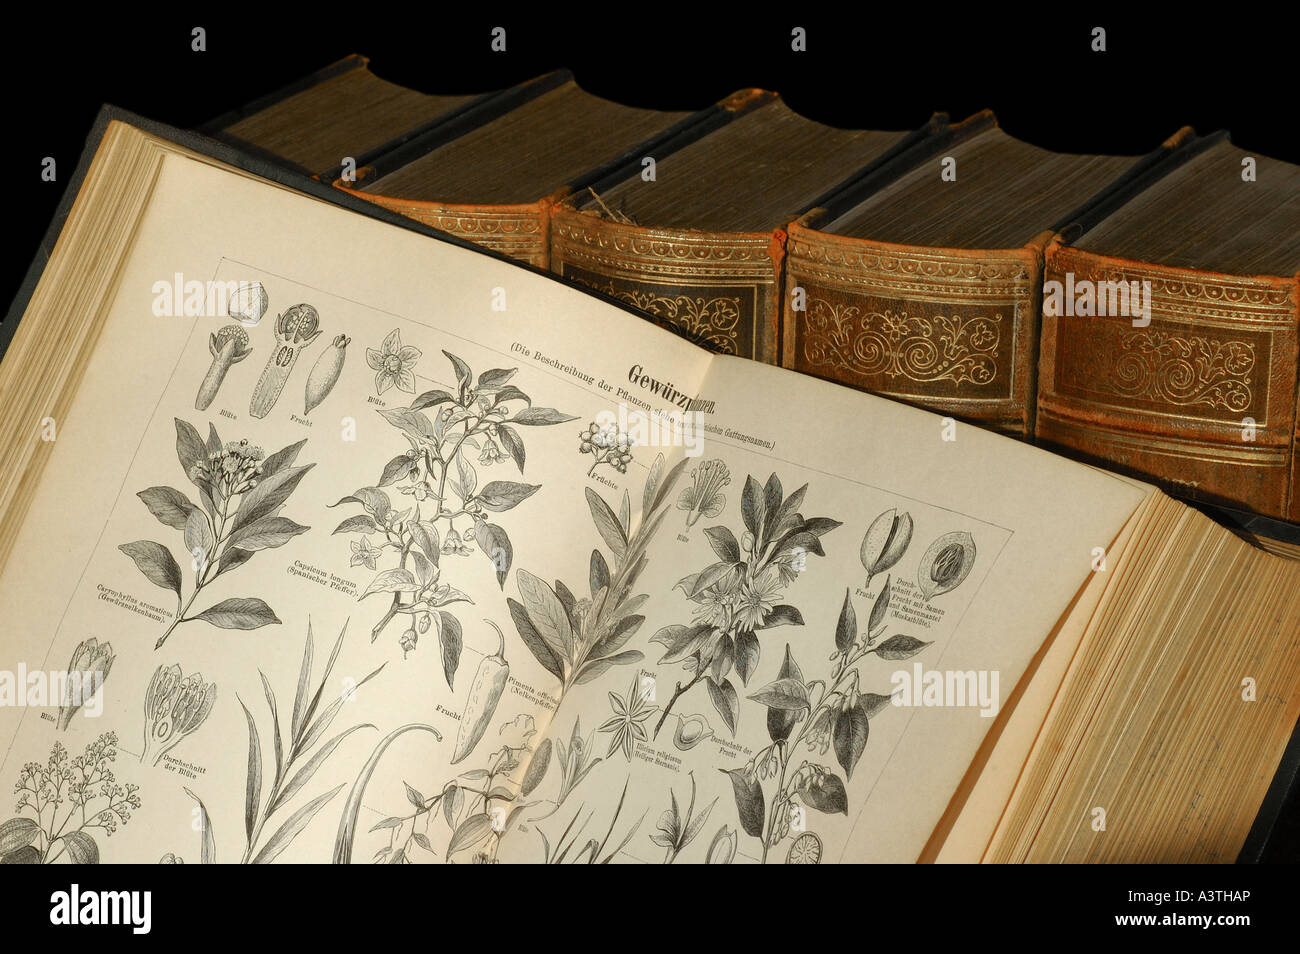 Des illustrations de plantes à épices dans une vieille encyclopédie canadienne Banque D'Images